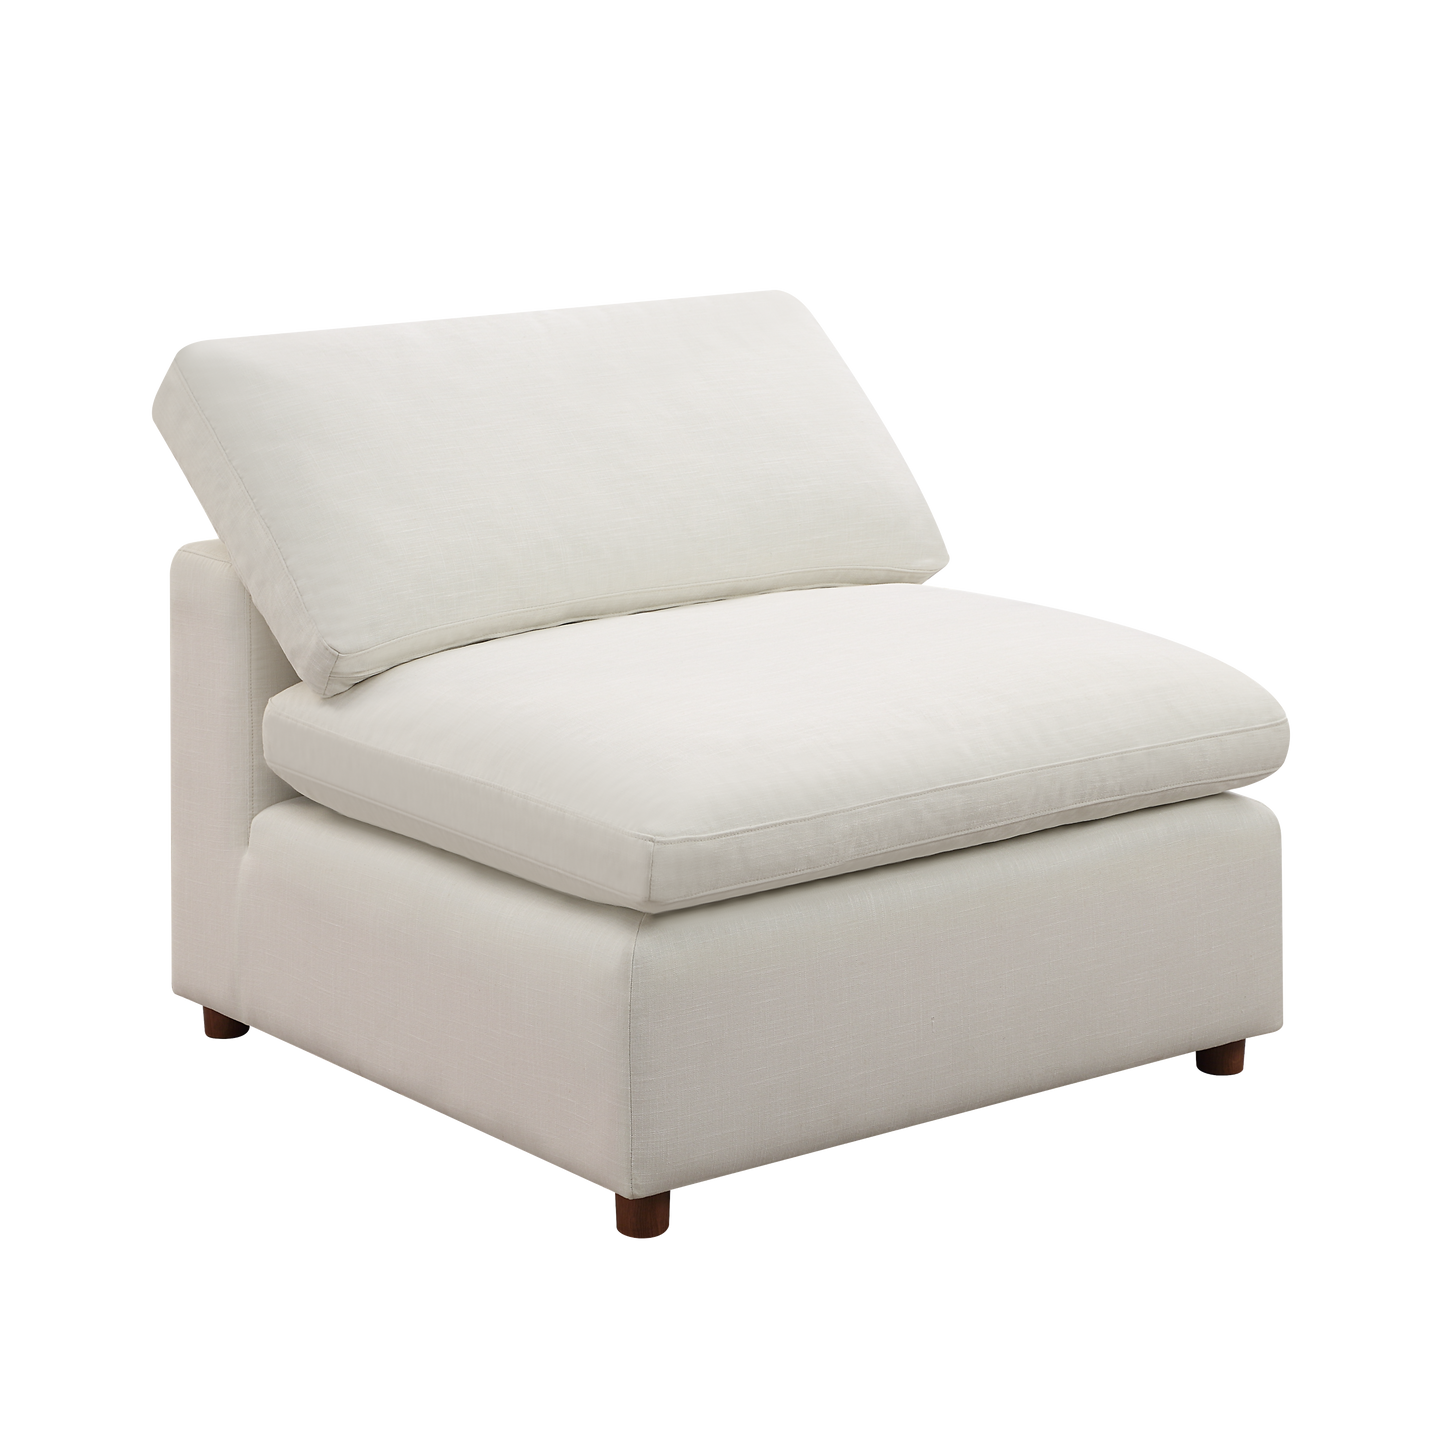 Modern Modular Sectional Sofa Set, Self-customization Design Sofa, White